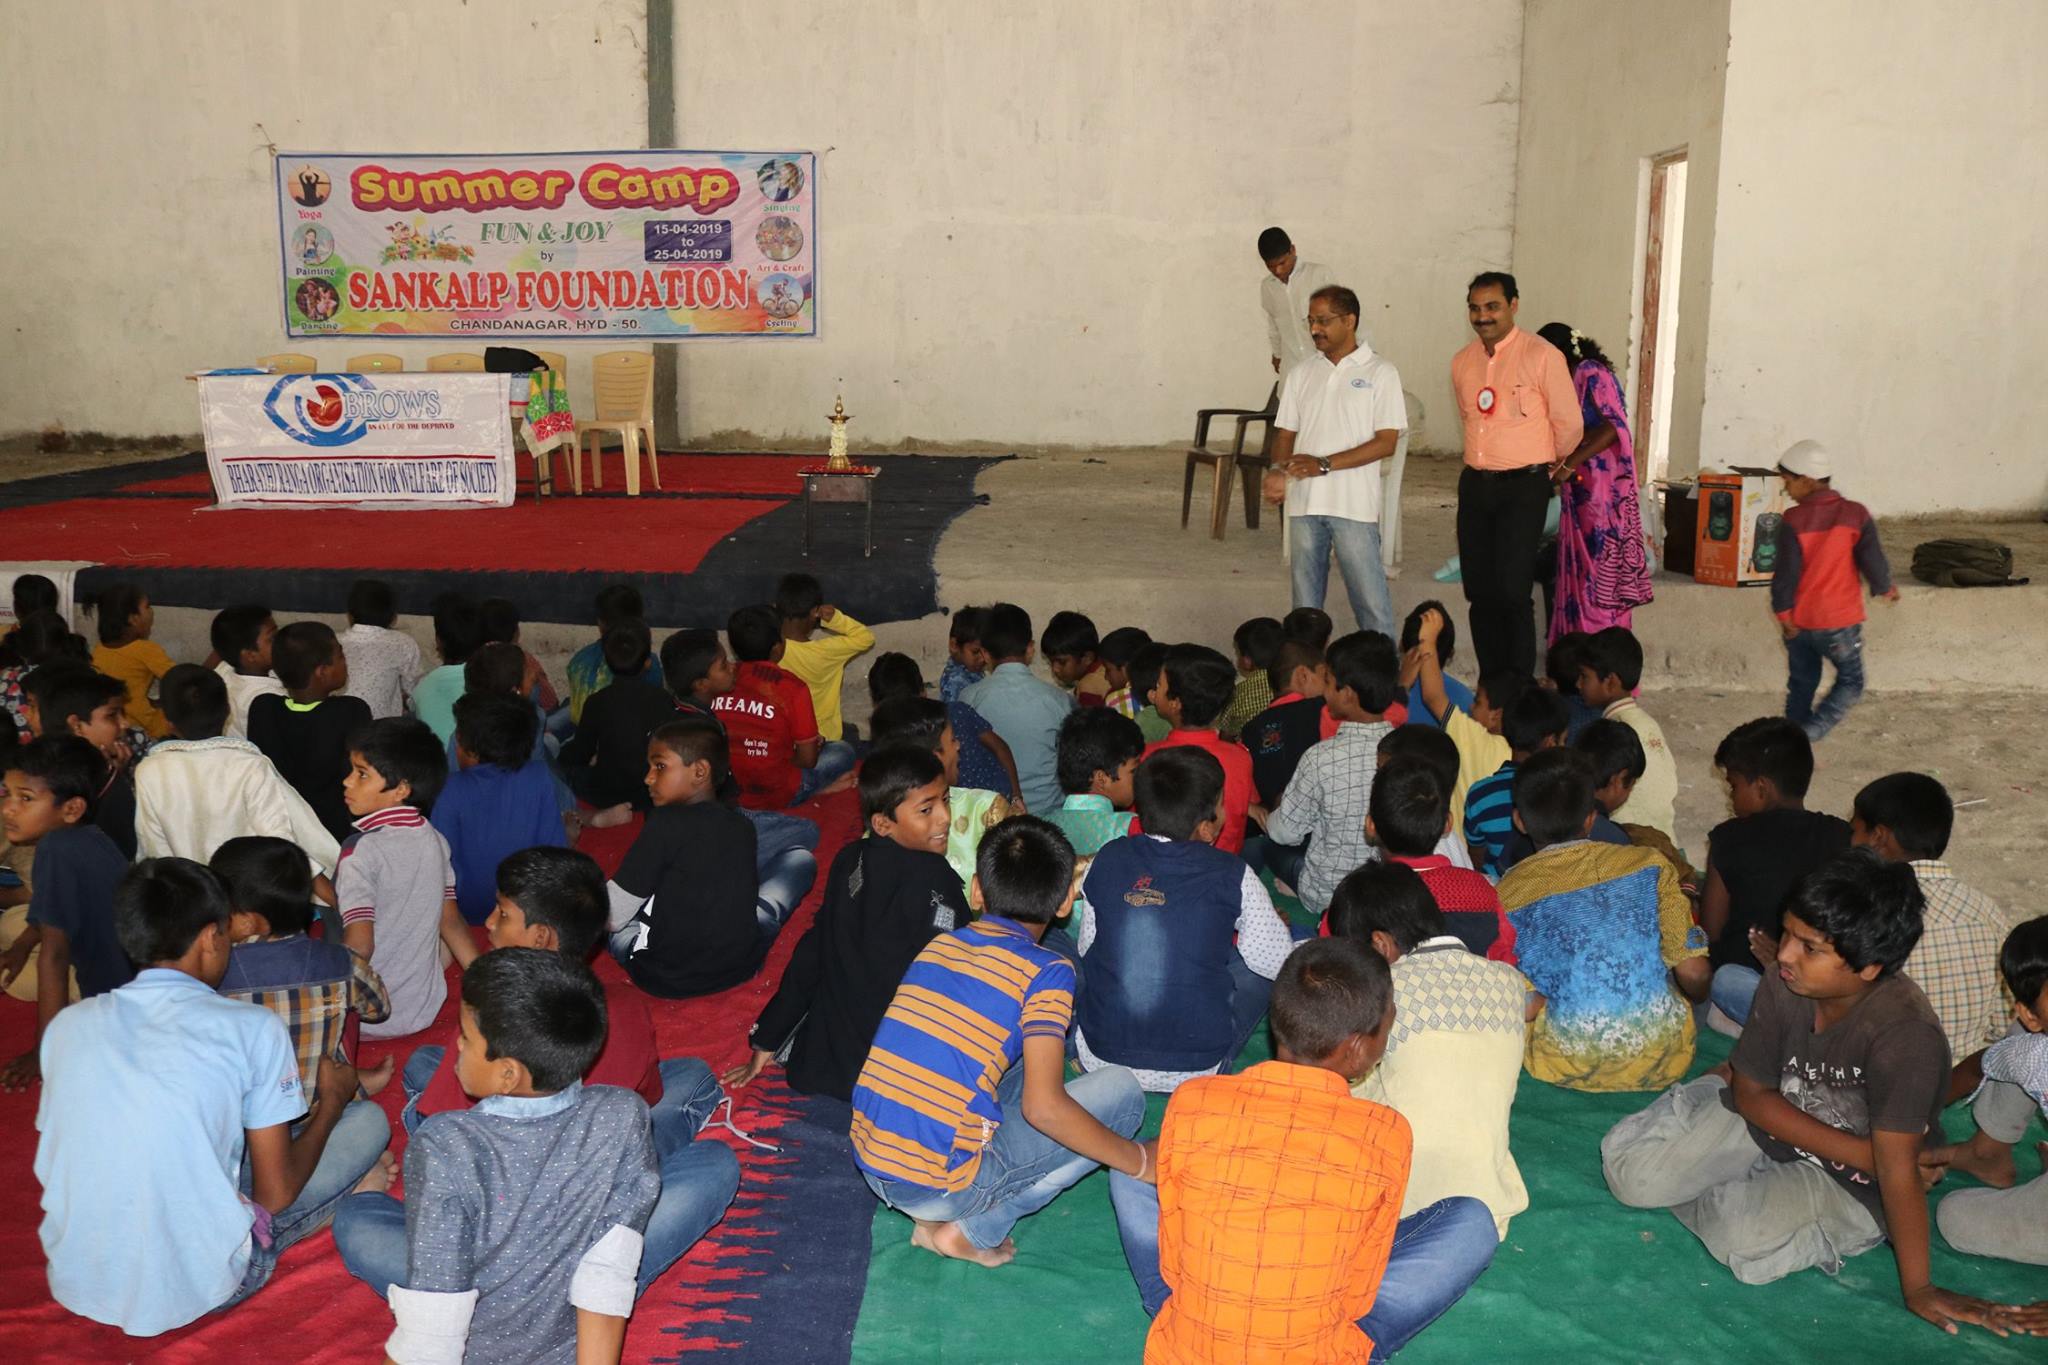 Summer Camp at Sankalp Foundation Chandanagar, Hyderabad on 25th April, 2019